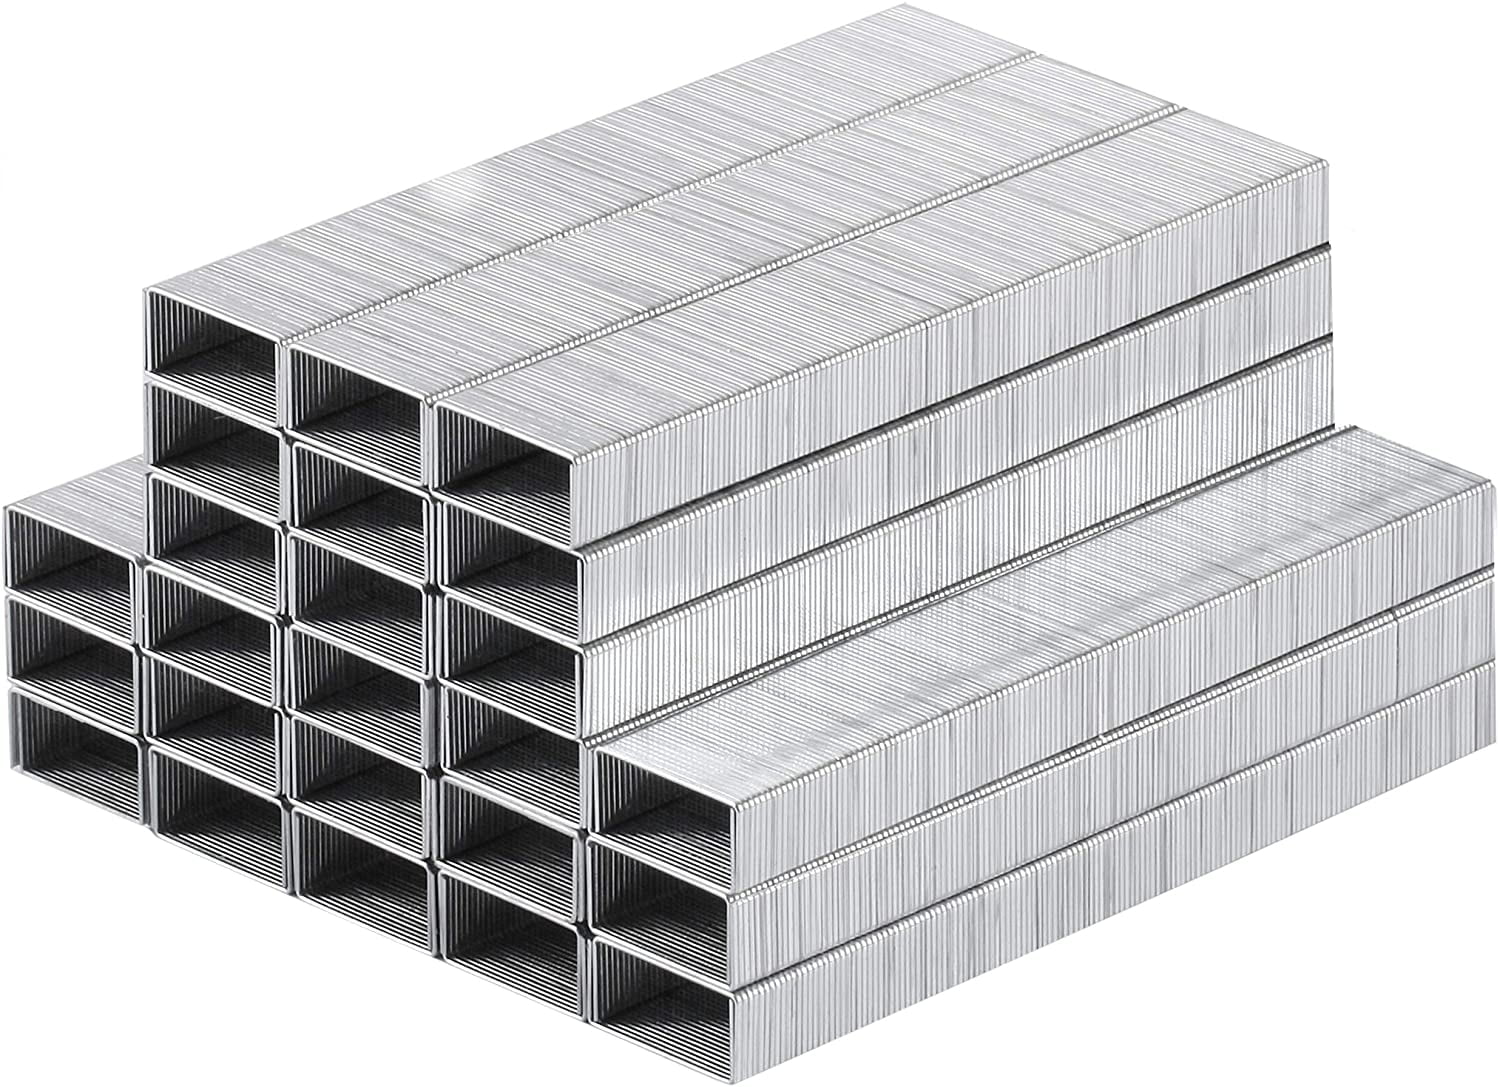 mr-pen-heavy-duty-staples-5000-pc-staples-25-sheet-staple-1-4-inch